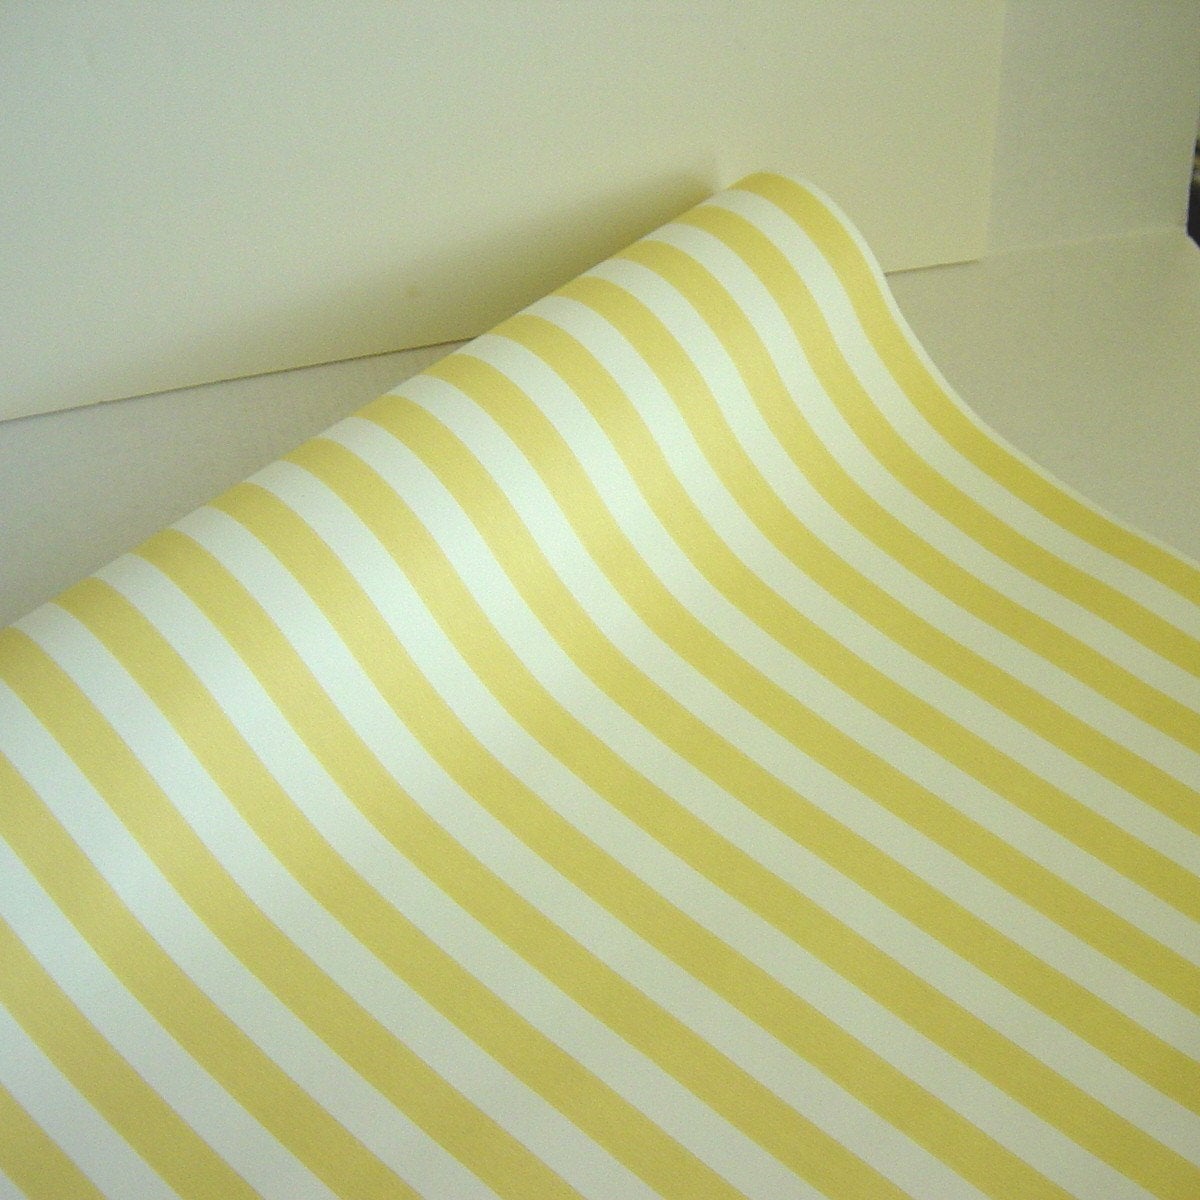 papel pintado amarillo y blanco,amarillo,textil,línea,sábana,ropa de cama